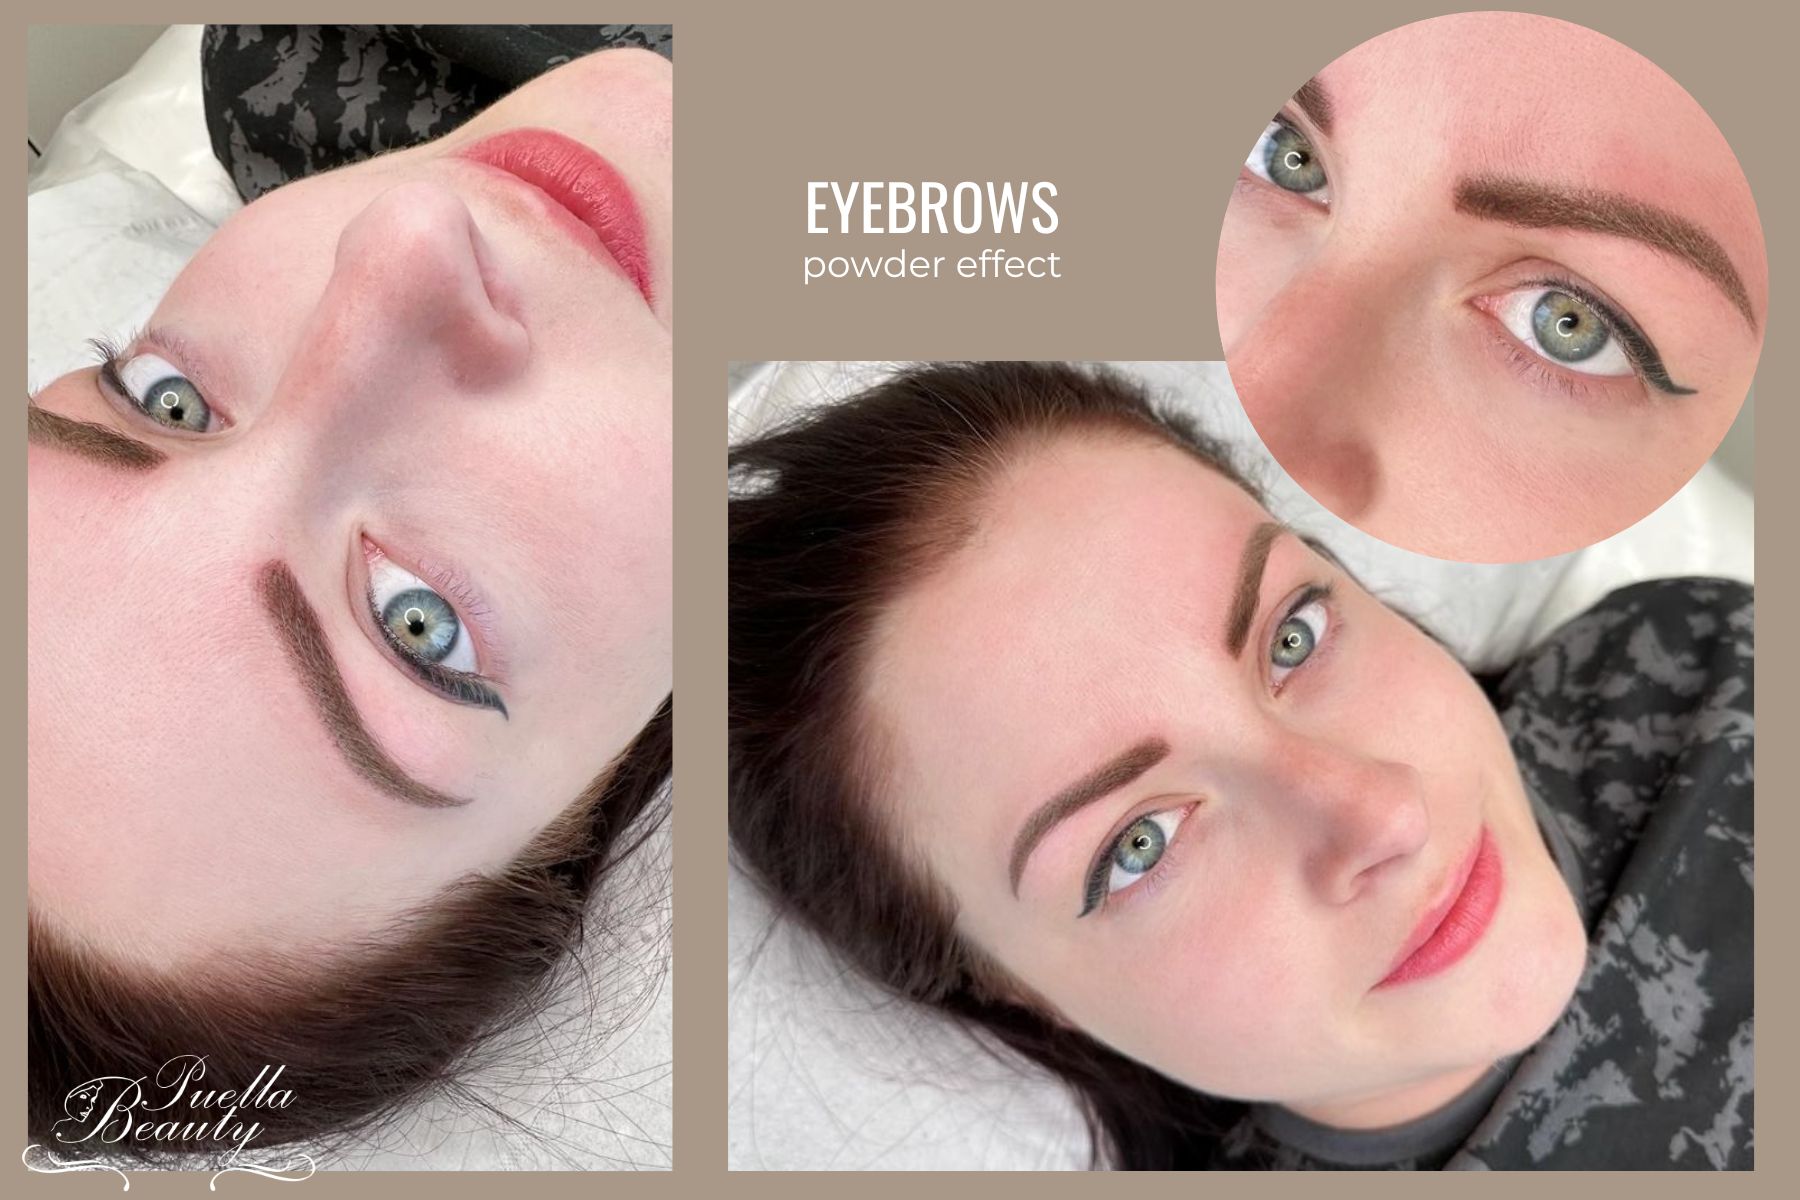 Eyebrows powder effect